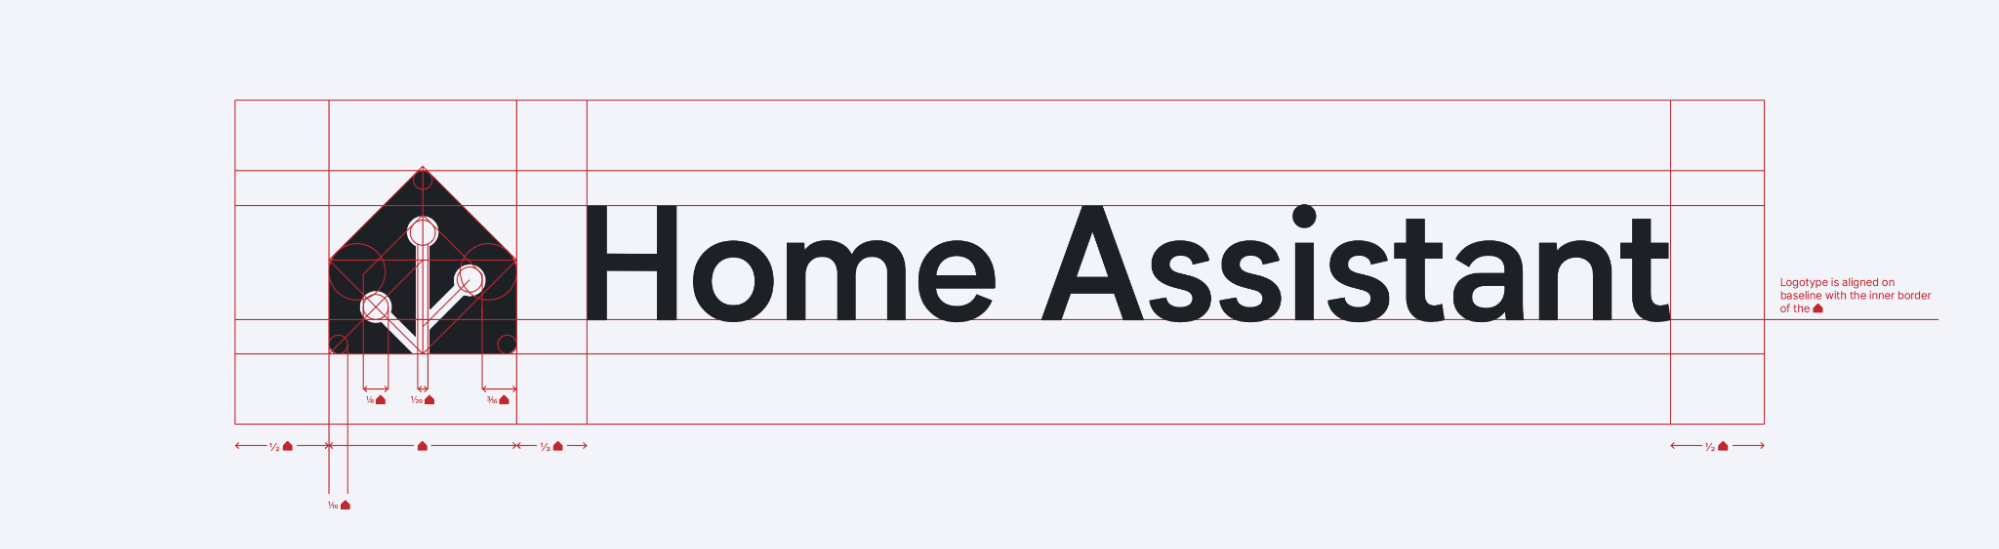 Dimensiones de diferentes partes del logo de Home Assistant.